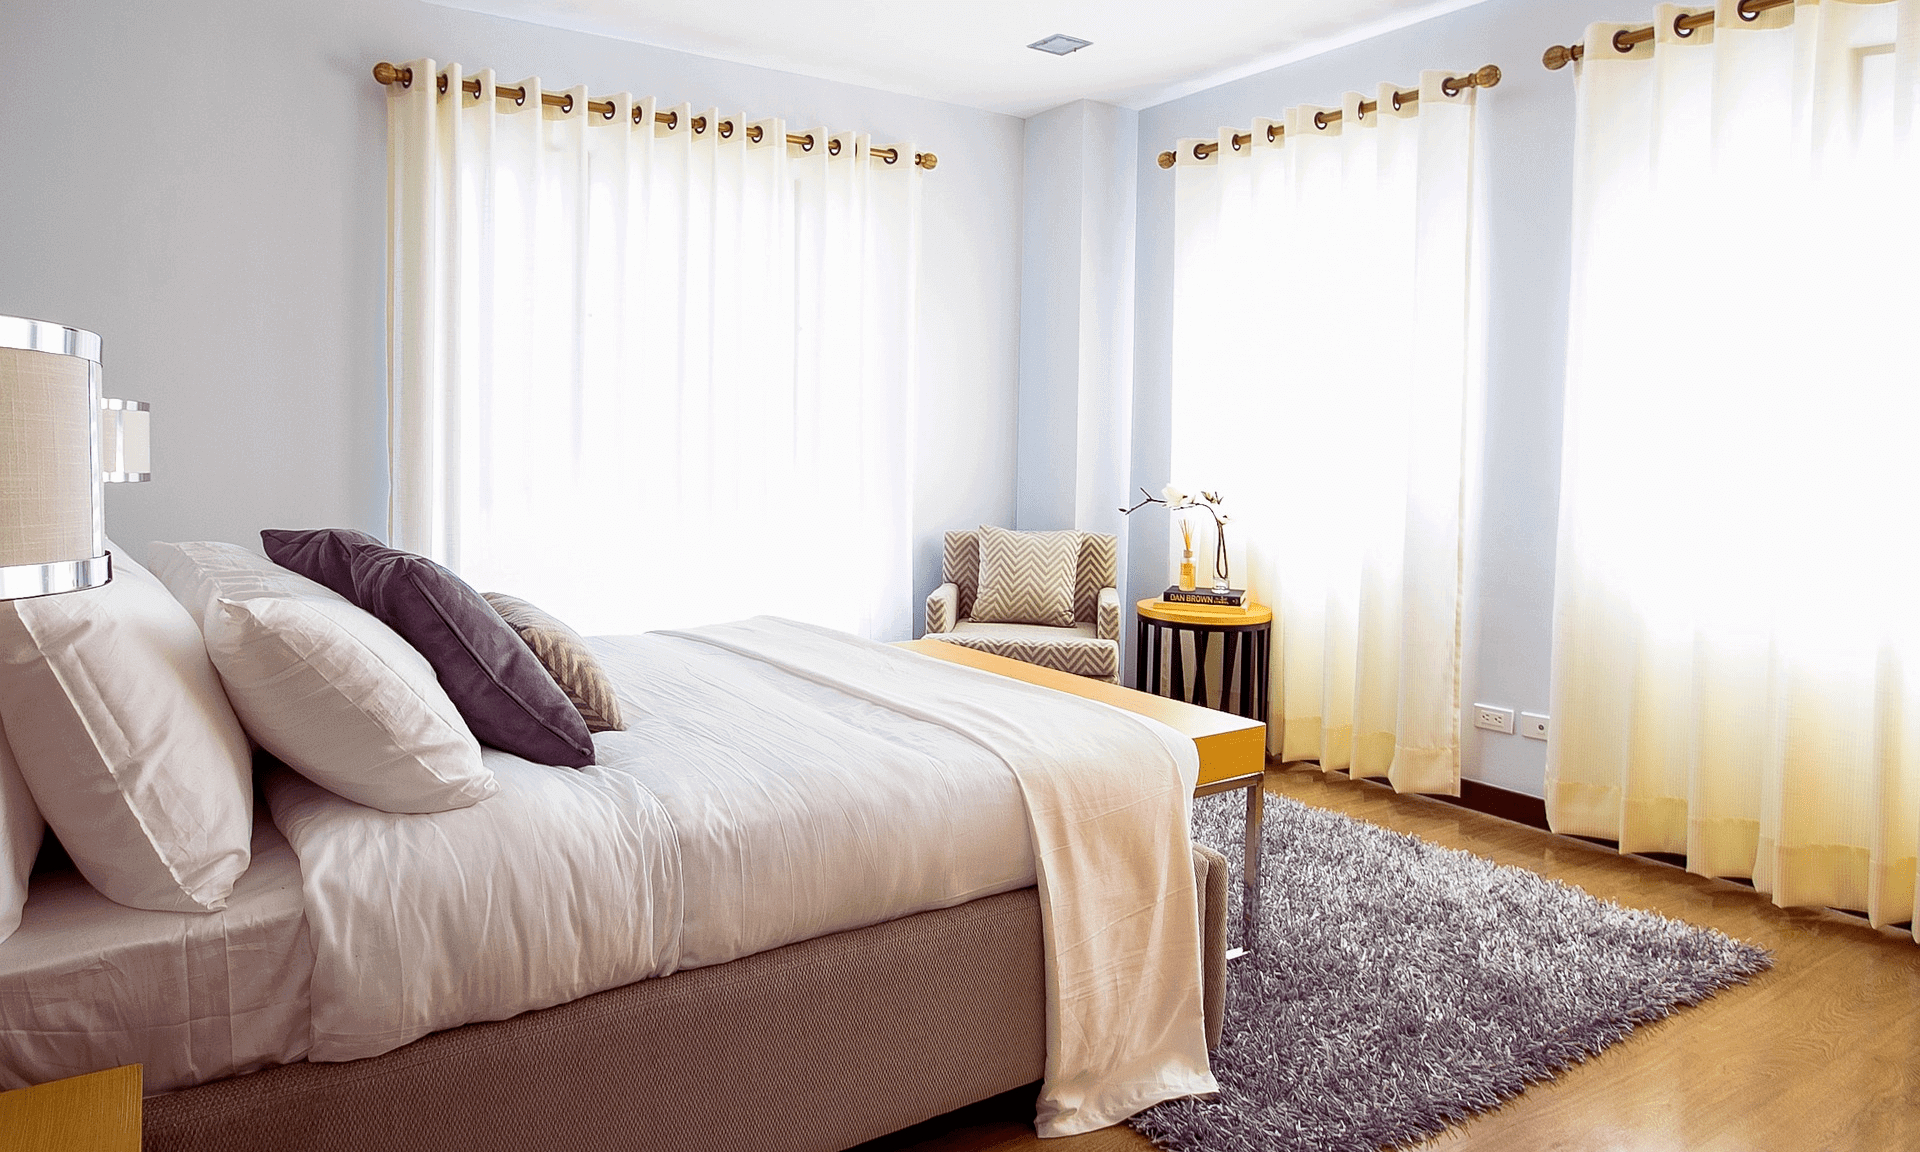 Muffiger Geruch Im Schlafzimmer - 7 Tipps Für Mehr Frische | Matnext inside Komischer Geruch Im Schlafzimmer